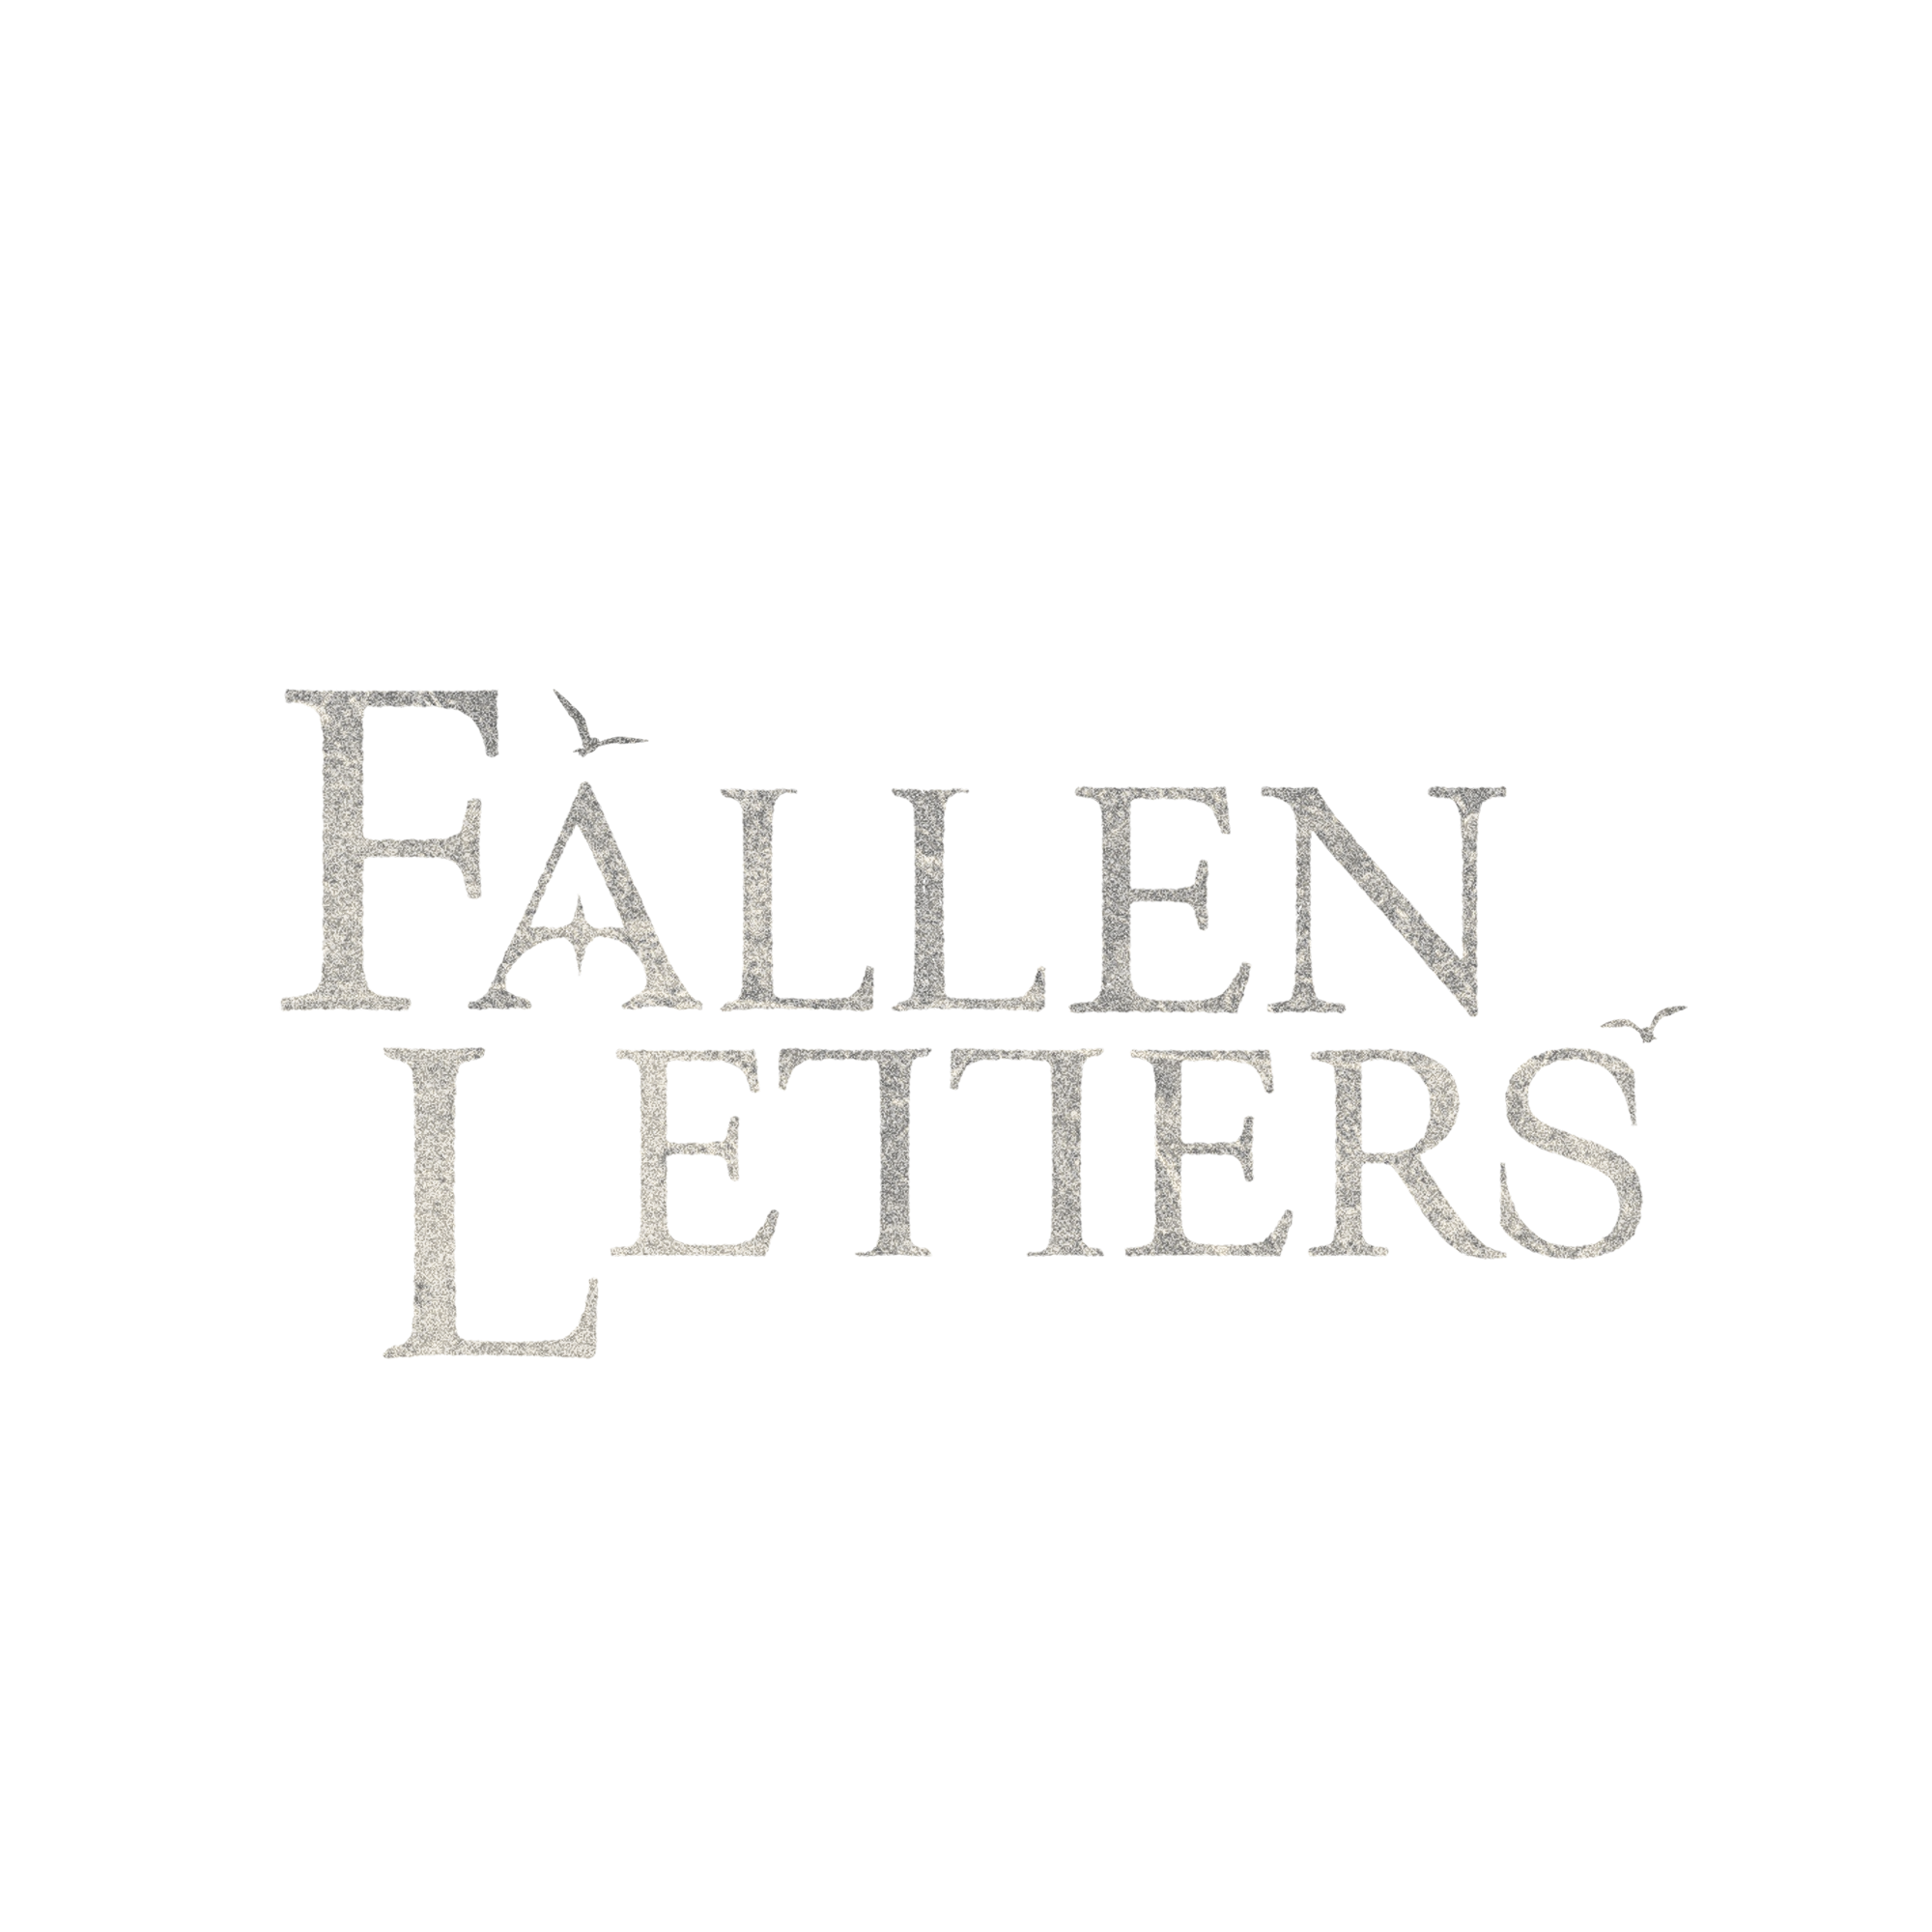 Fallen Letters